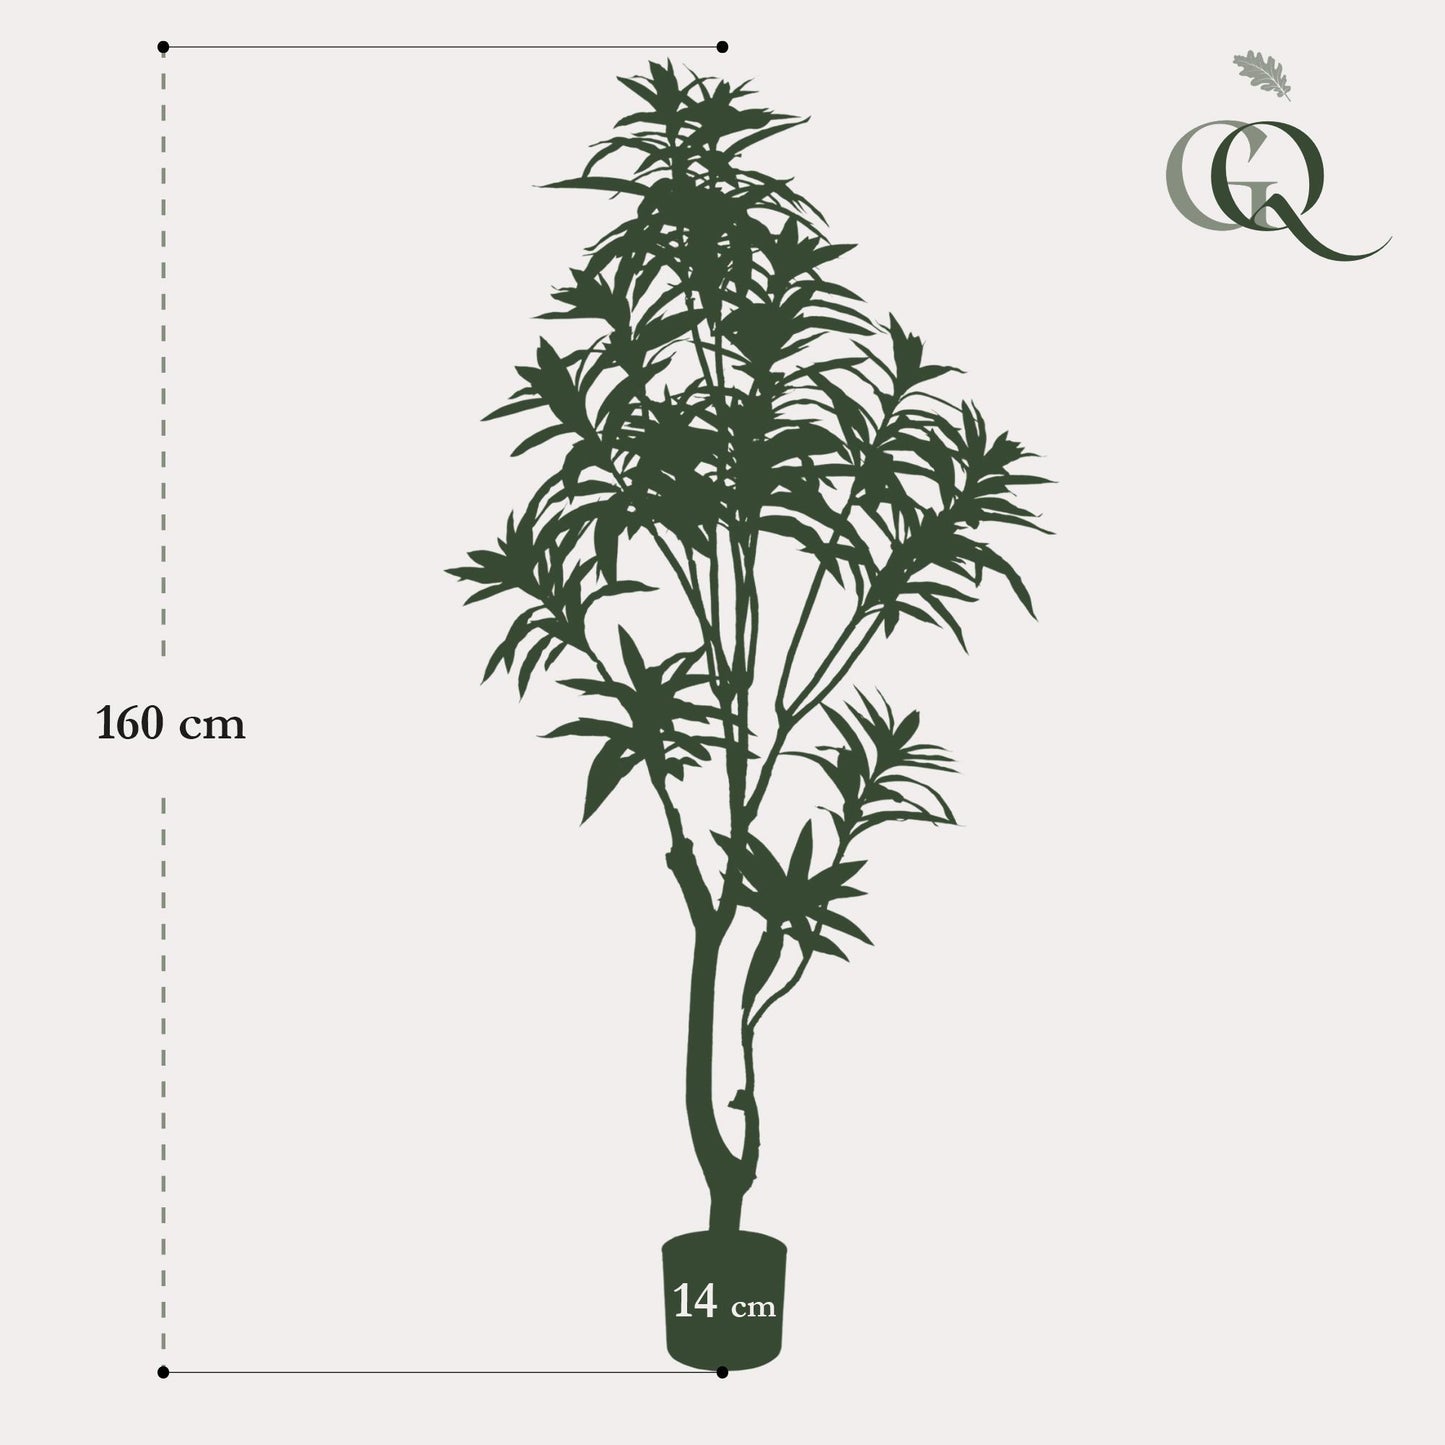 Kunstplant - Dracaena - Drakenboom Kunstplant - Dracaena - Drakenboom - 155 cm